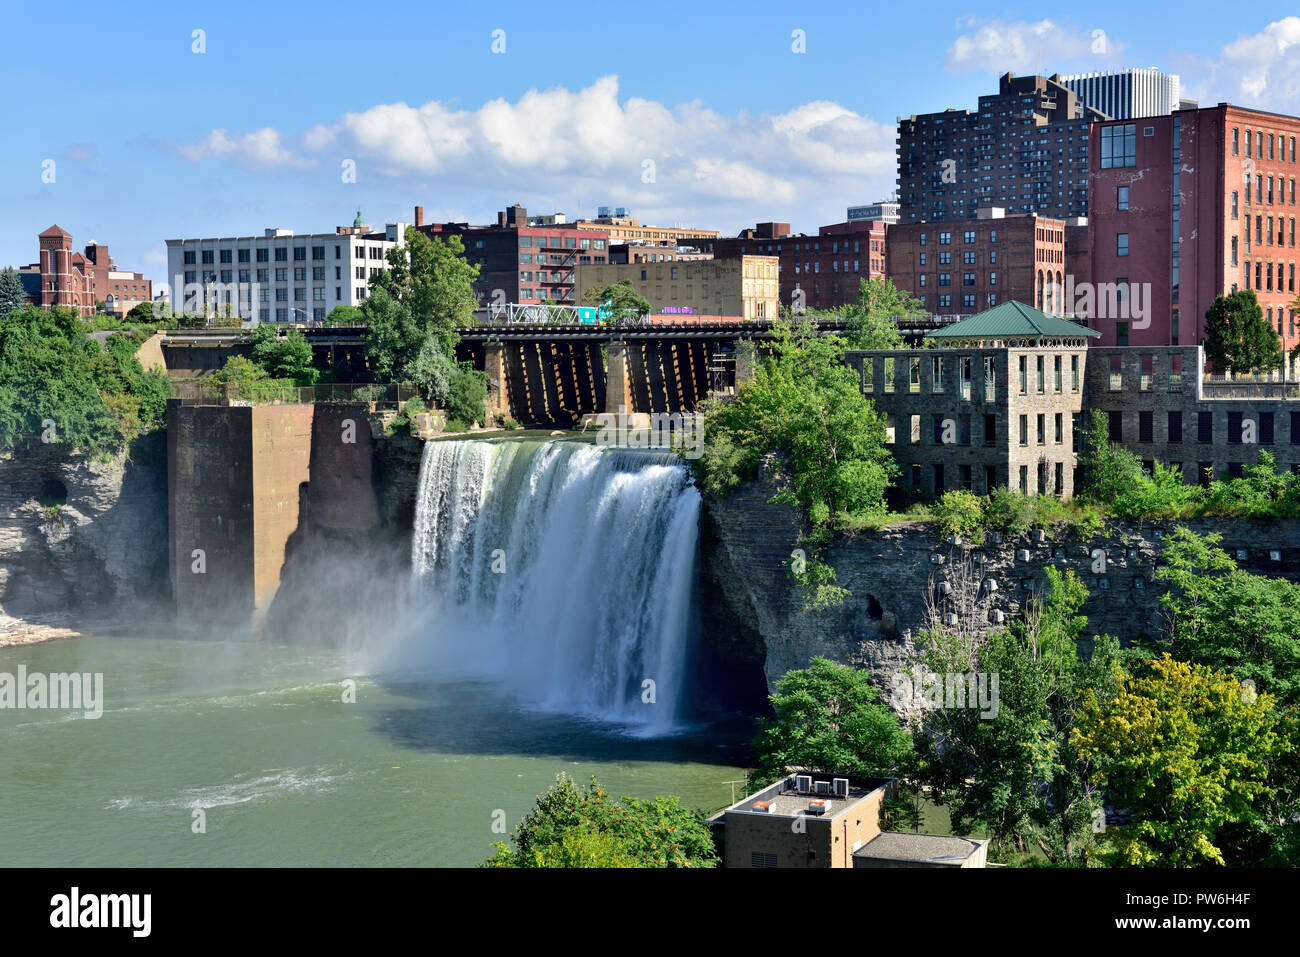 Le centre de Rochester, New York Genesee River High Falls avec de grands bâtiments de ville derrière vous, USA Banque D'Images